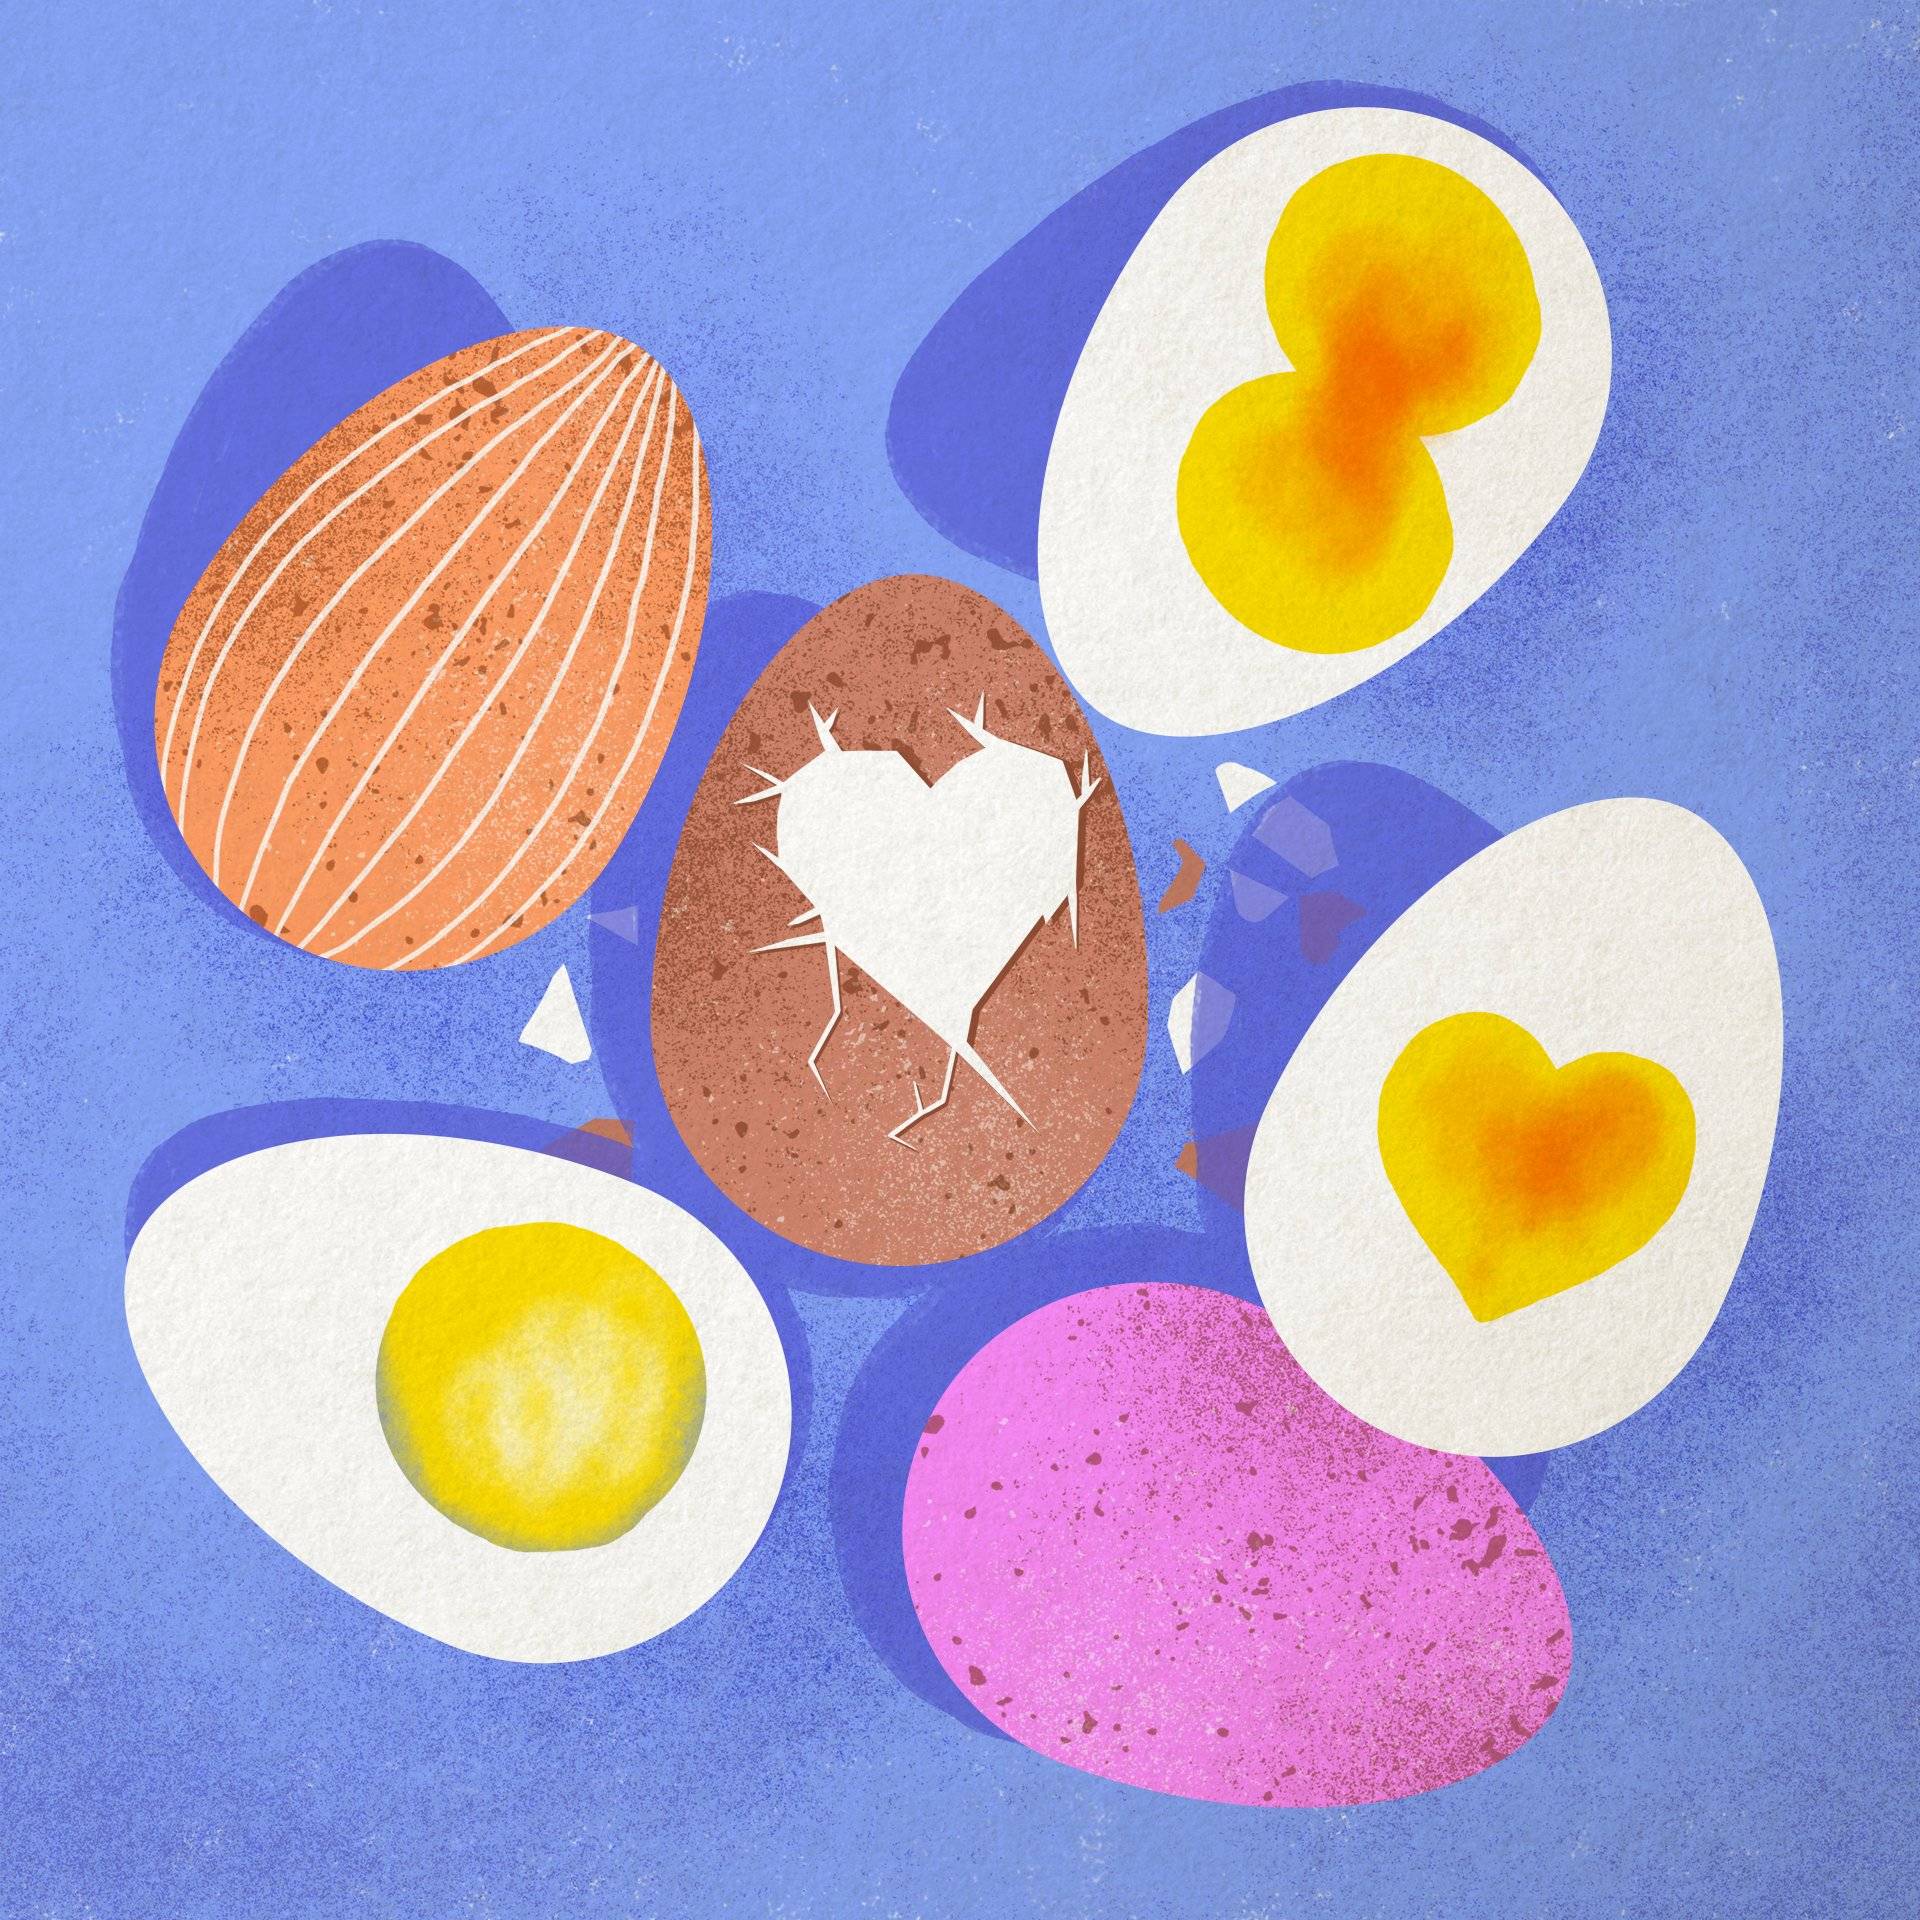 Rysunek kilku jaj w kolorowych skorupkach i kilka połówek ugotowanego jajka na twardo